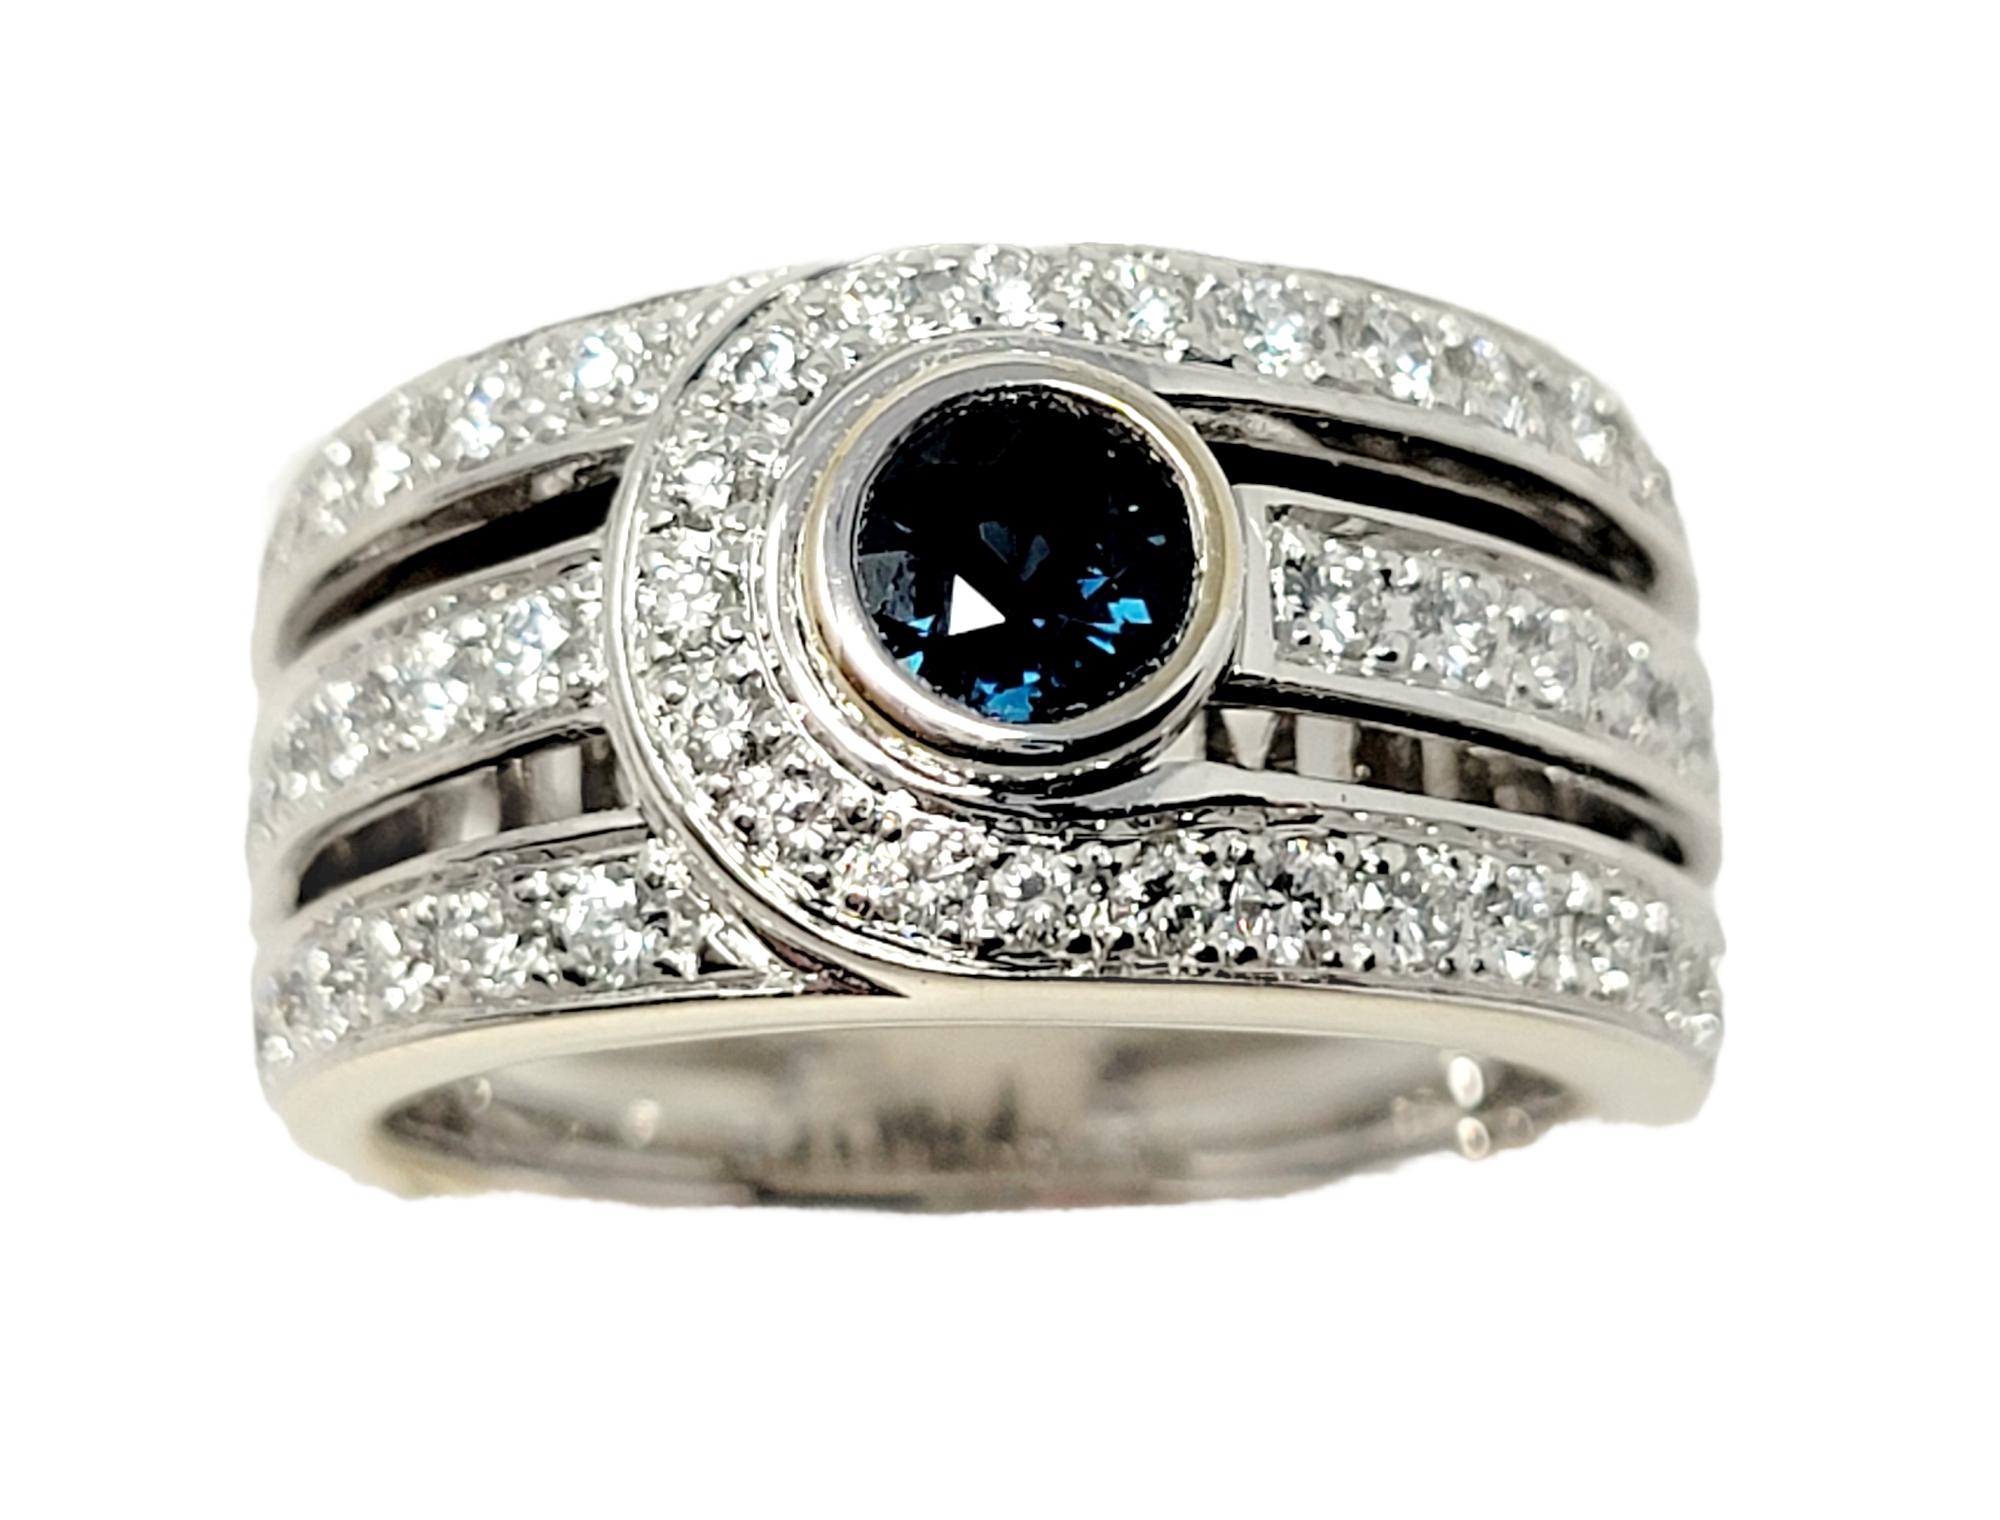 Taille de l'anneau : 6.75

L'anneau contemporain à plusieurs rangs du designer Di Modelo brille et resplendit grâce à ses diamants étincelants, tandis que le saphir central ajoute une élégante touche de couleur. 

Type de bague : Anneau
Métal : Or